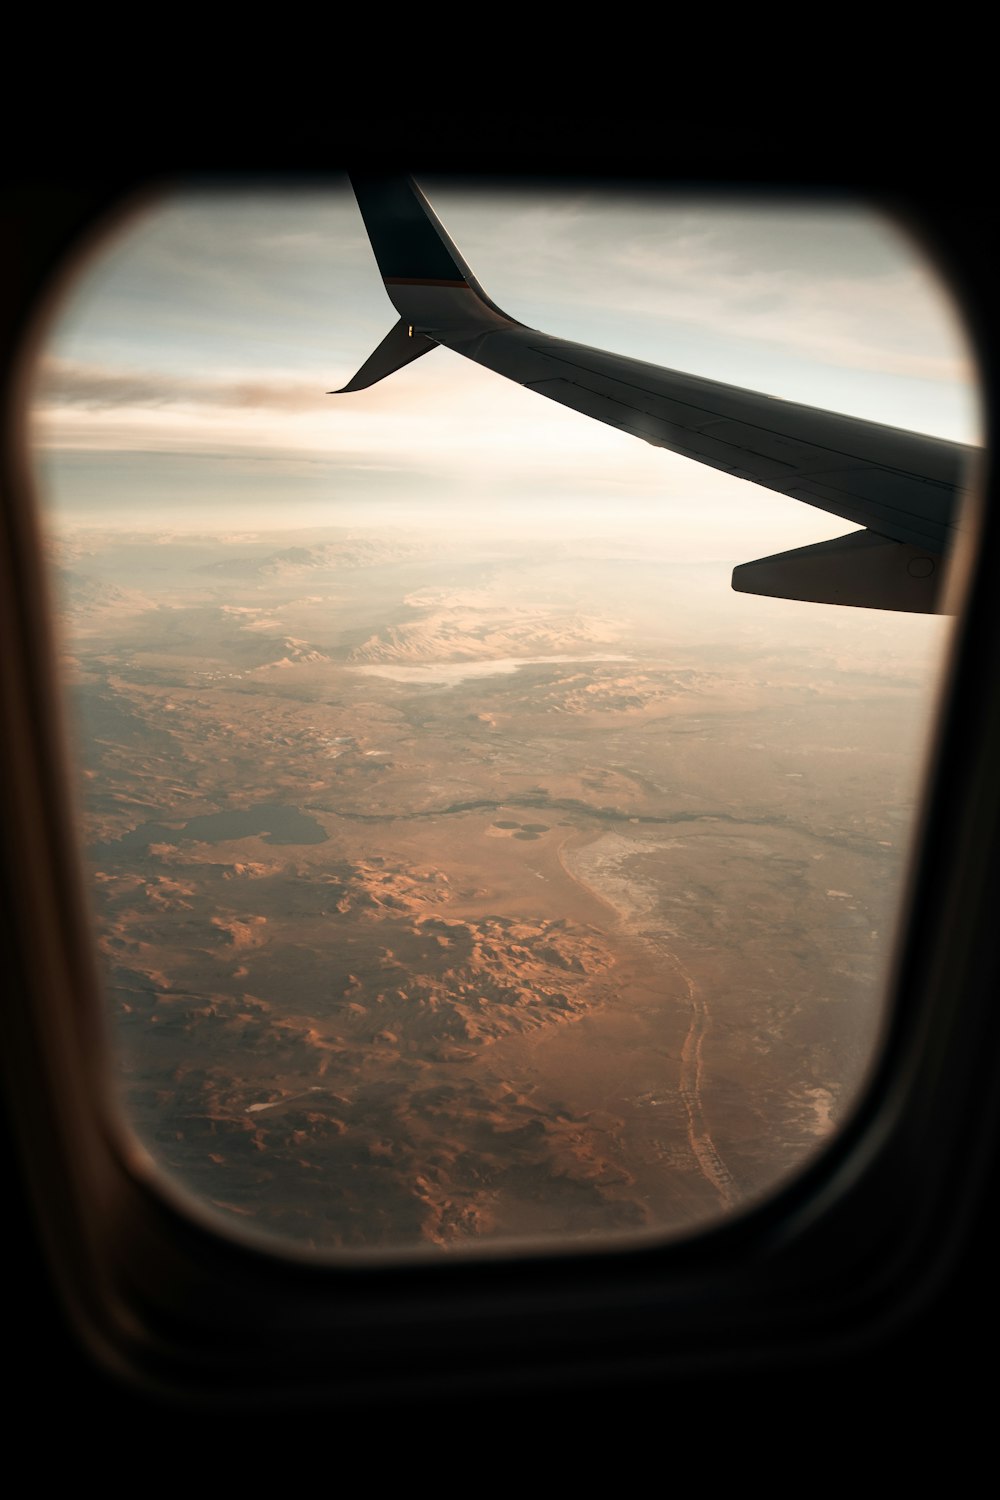 vista da janela do avião das nuvens durante o dia